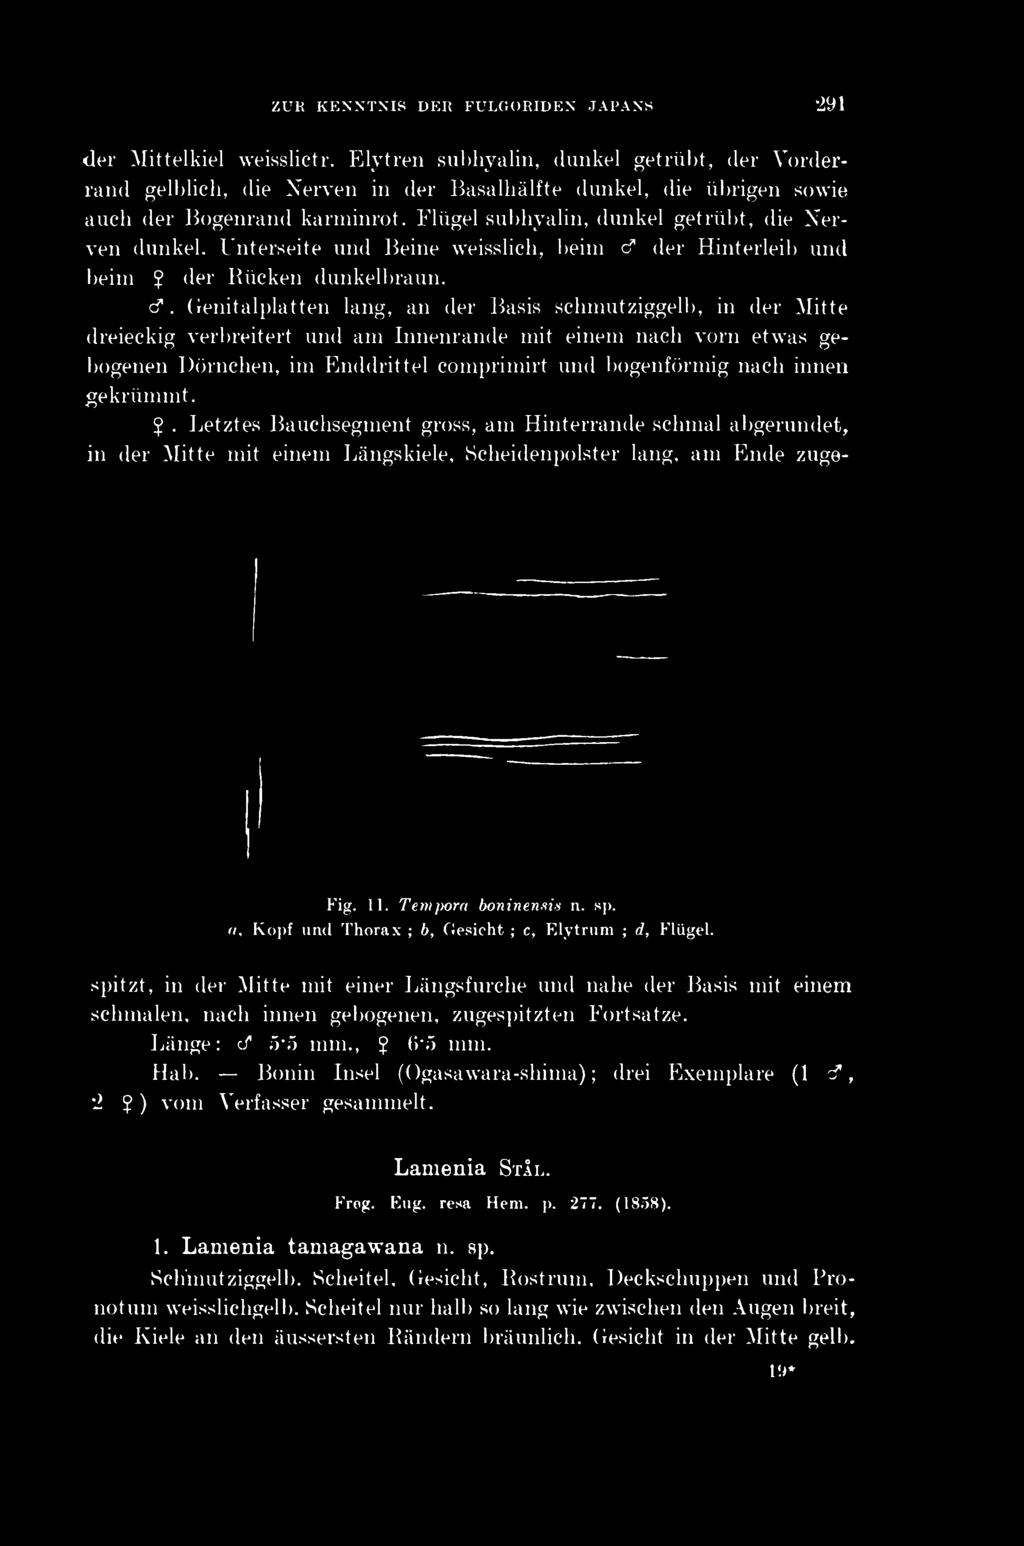 ZUK KENNTNIS DE Ii FULGORIDEN JAPANS 291 Fig. 11. Tempora boninensis n. sp. n, Kopf und Thorax ; b, Gesicht ; c, Elytrum ; d, Flügel. der Mittelkiel weisslictr.